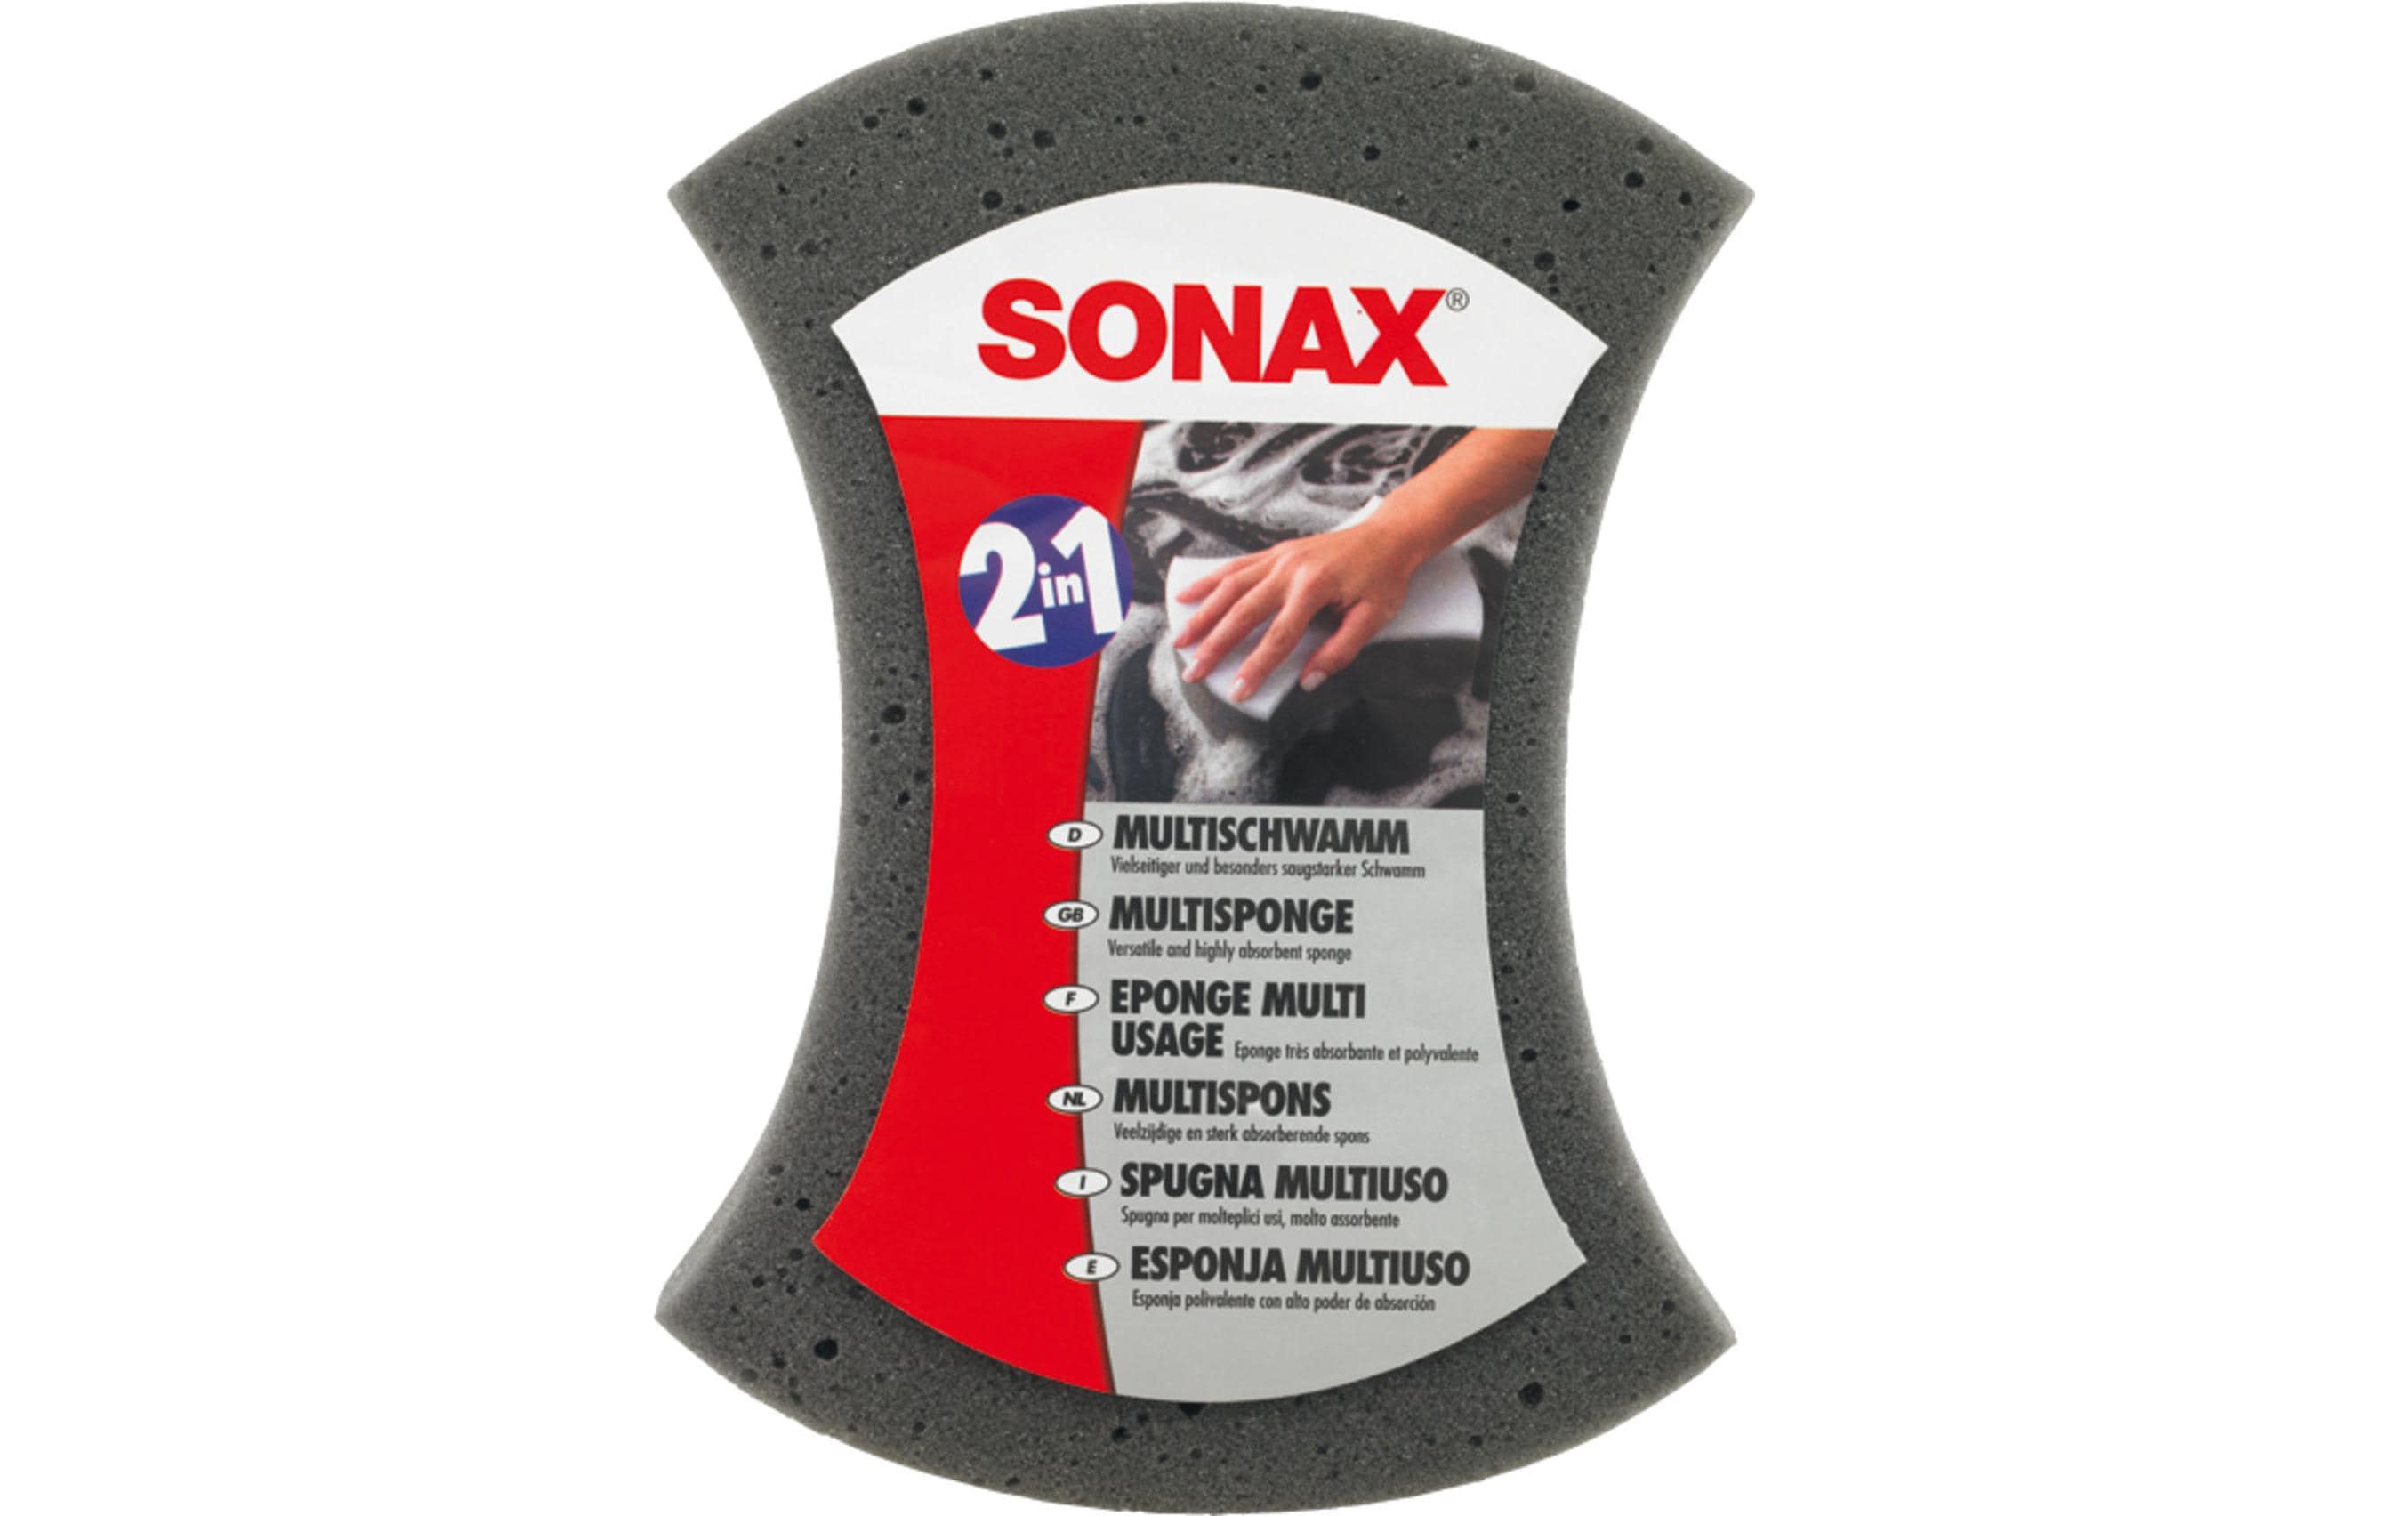 Sonax Schwamm Multi 2-in-1